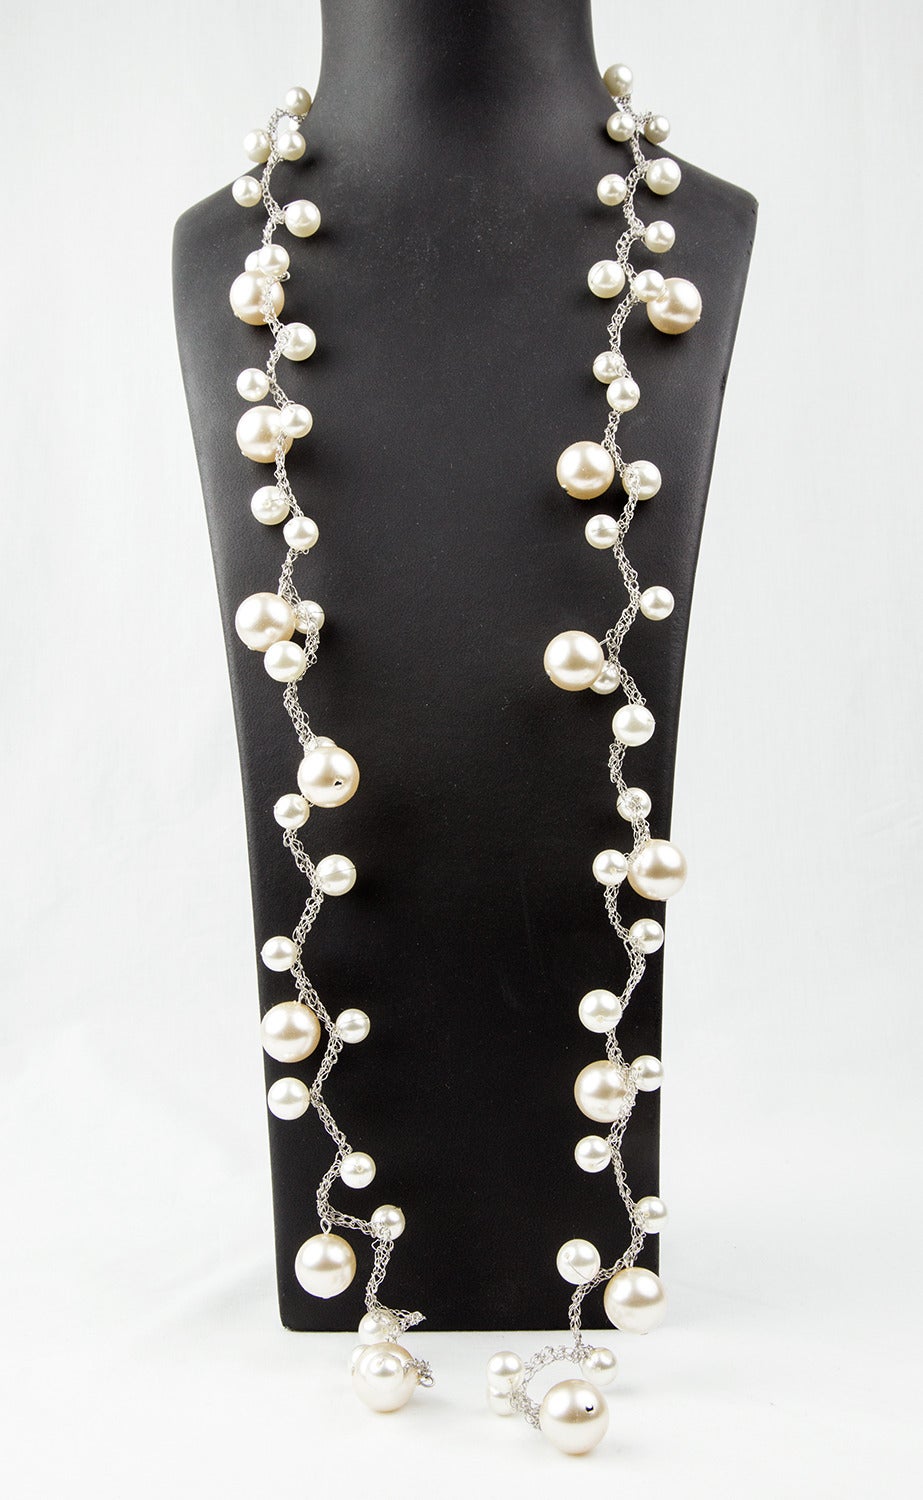 La magie des perles ! Long et élégant collier de fausses perles composé de fausses perles rondes graduées sur une chaîne en fil de fer tressé ; les perles mesurent environ 18 mm pour les grandes, 12 mm pour les moyennes et 10,5 mm pour les petites ;